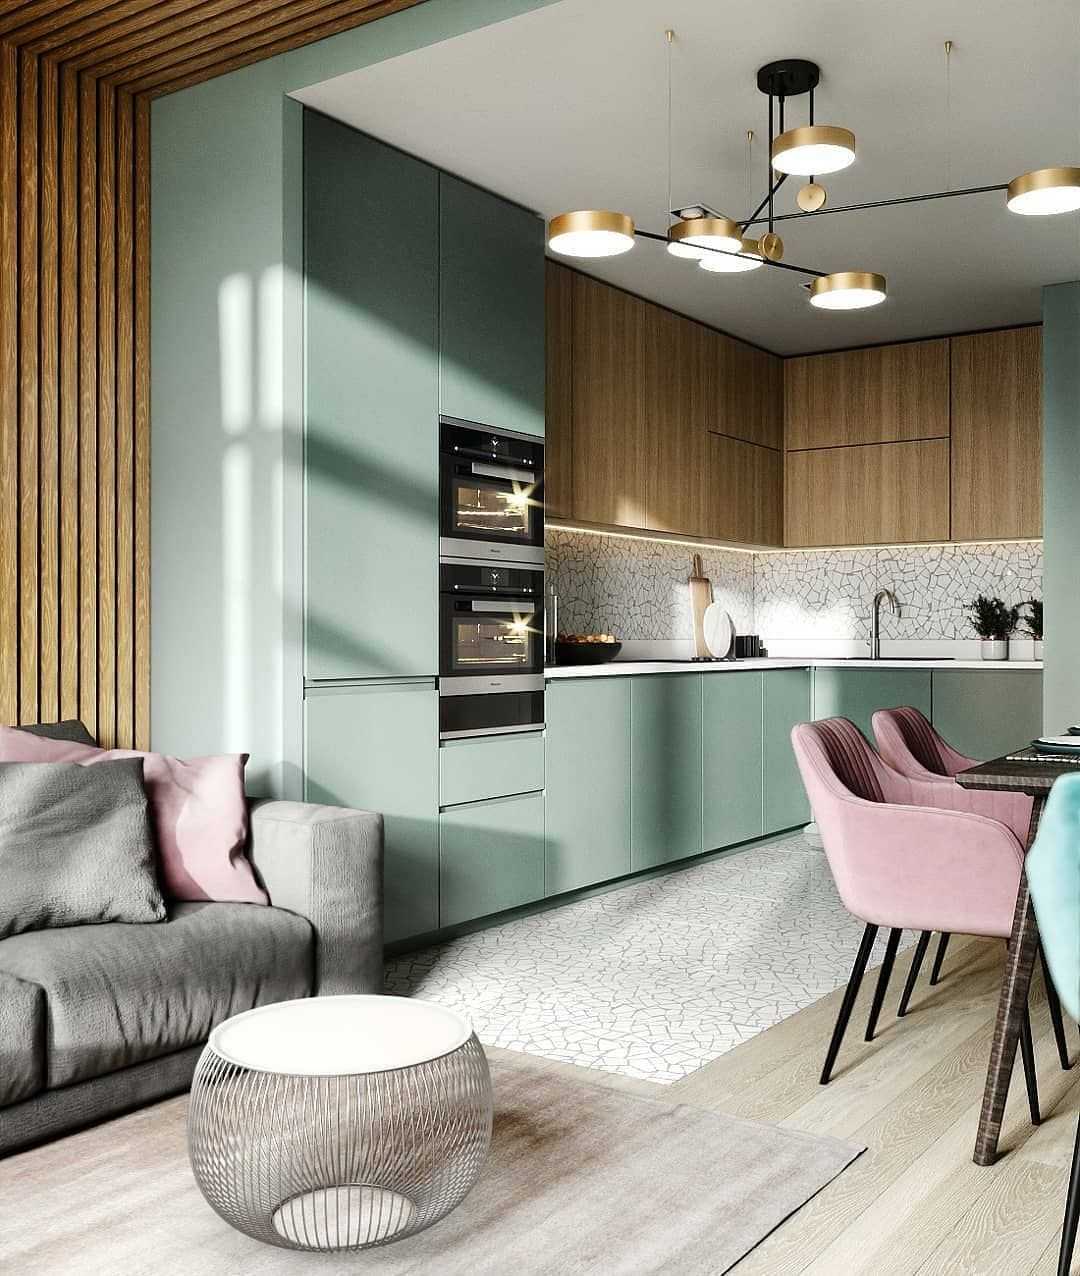 Дизайн интерьера двухкомнатной квартиры: перепланировка, объединение гостиной с кухней или балконом, объединение кухни с балконом, зонирование | ileds.ru